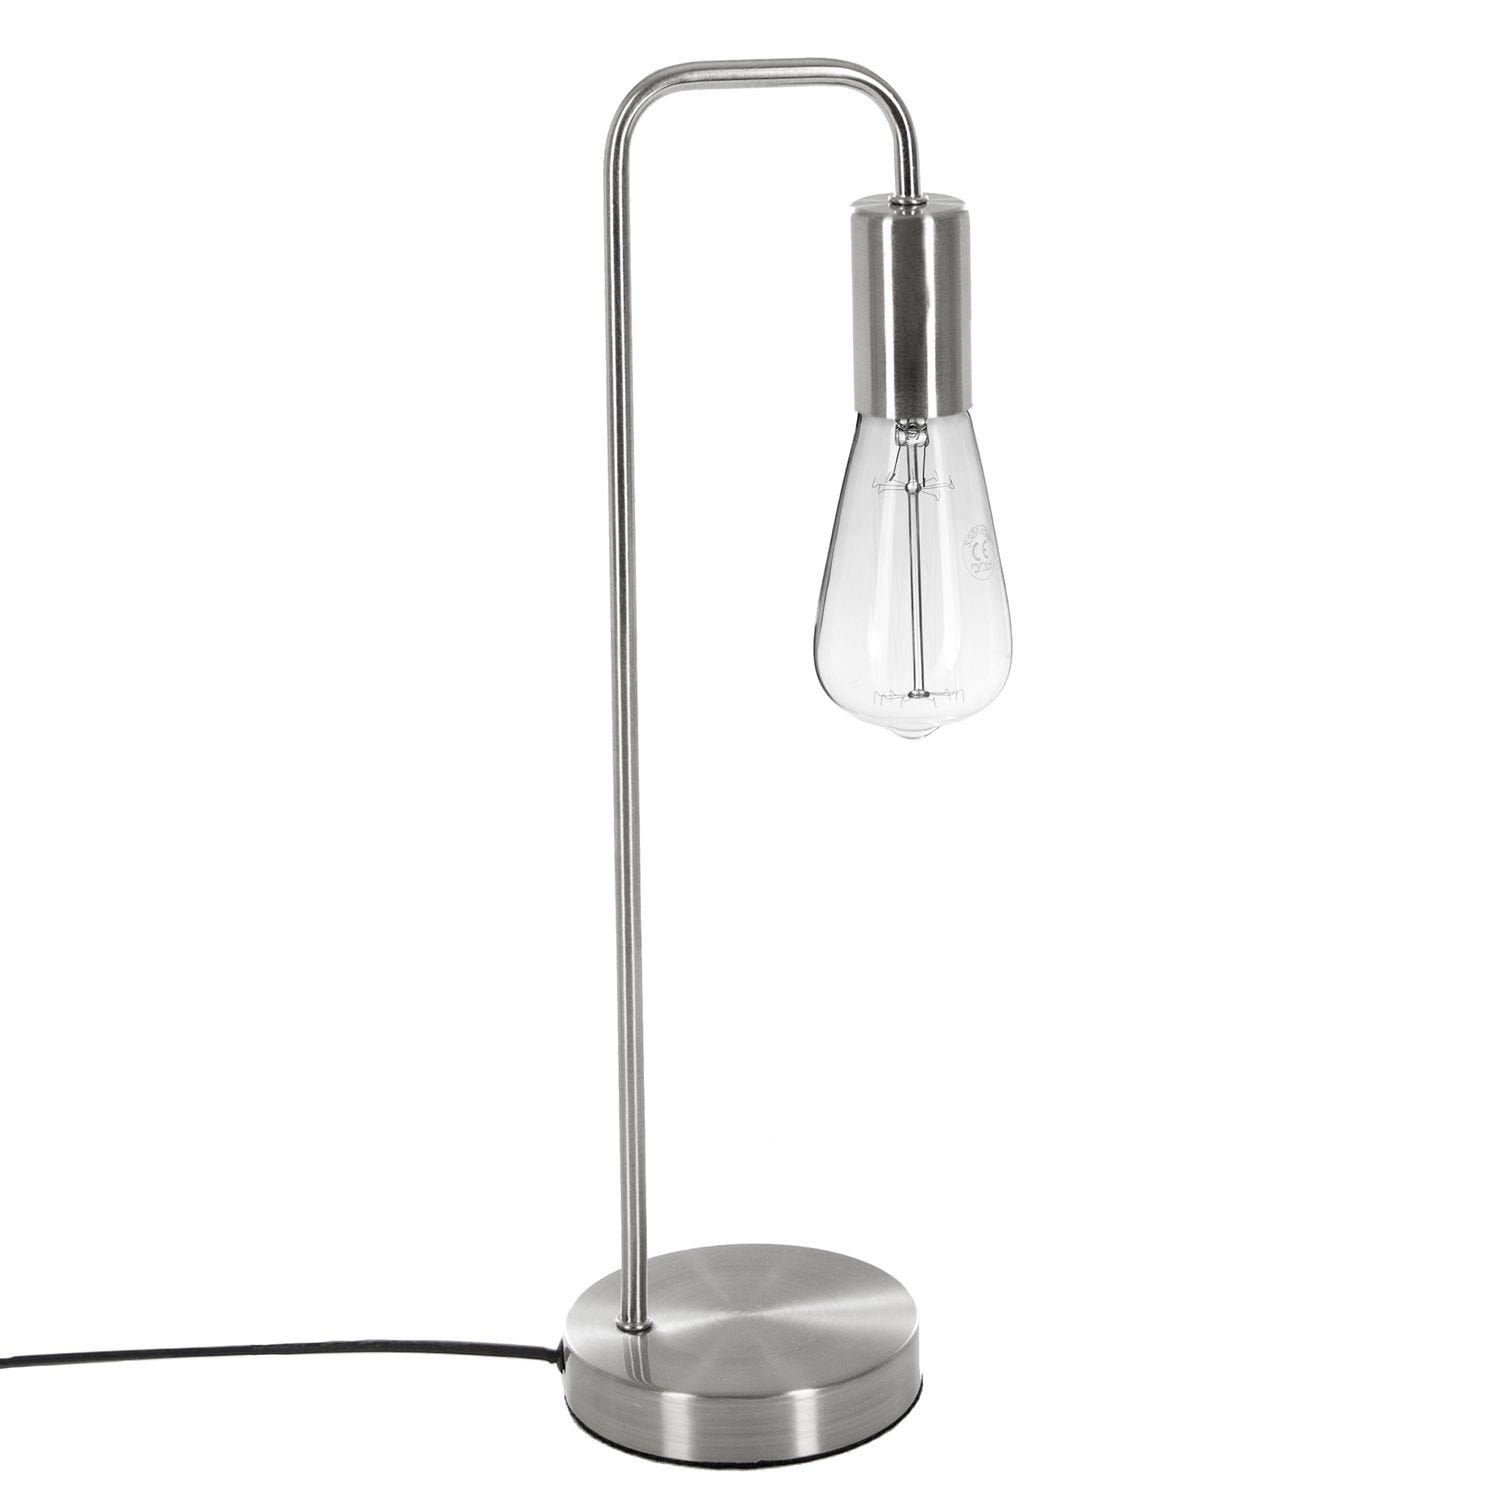 Lampe de bureau, design, pvc blanc, INSPIRE 820 lm Alex